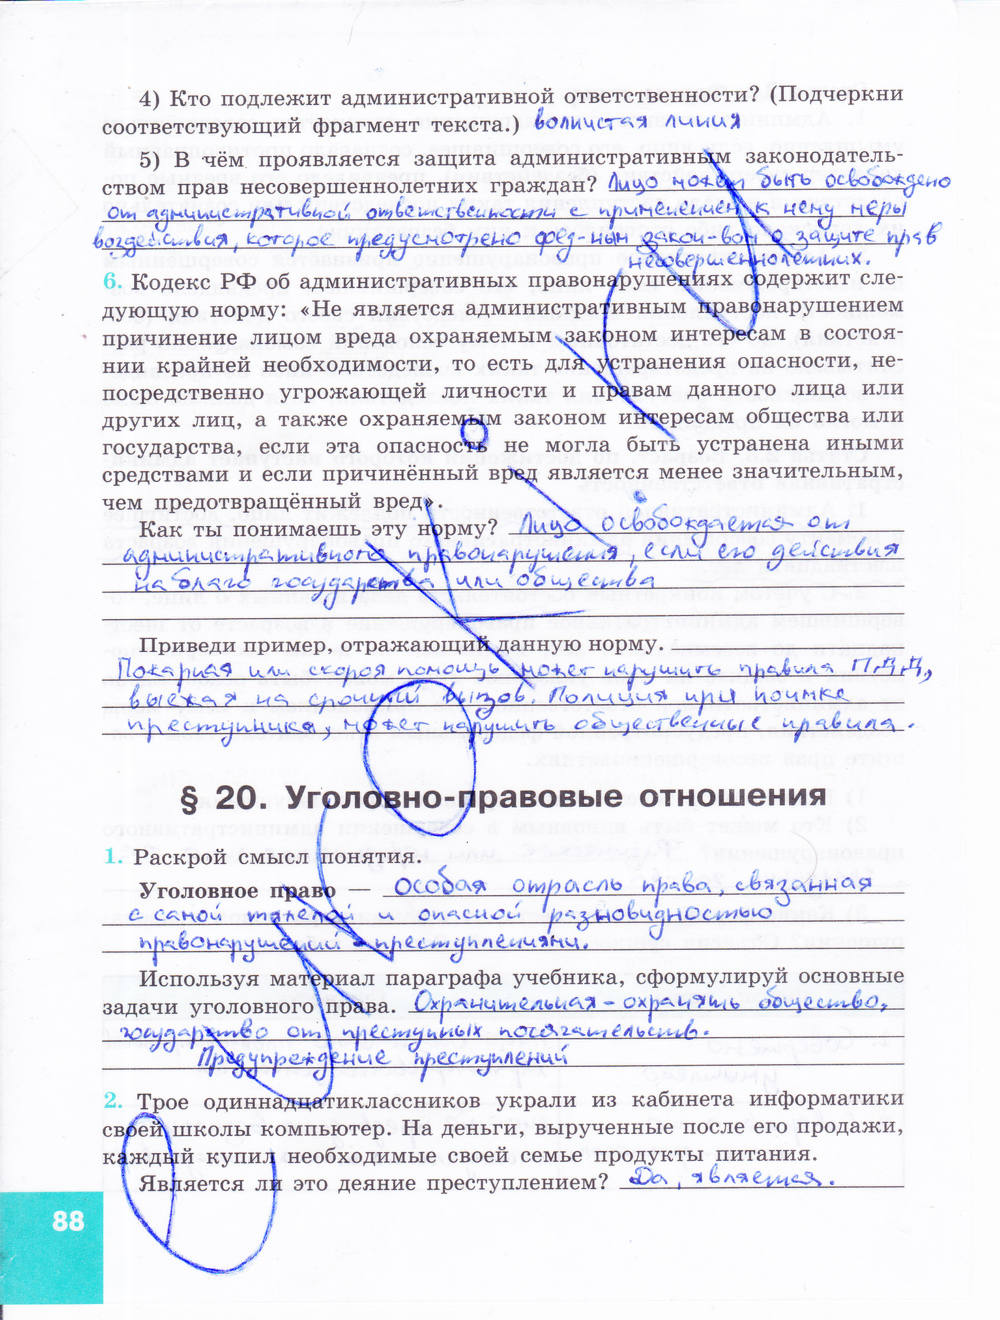 Зеленая тетрадь, 9 класс, Котова О.А. Лискова Т.Е., 2015, задание: стр. 88